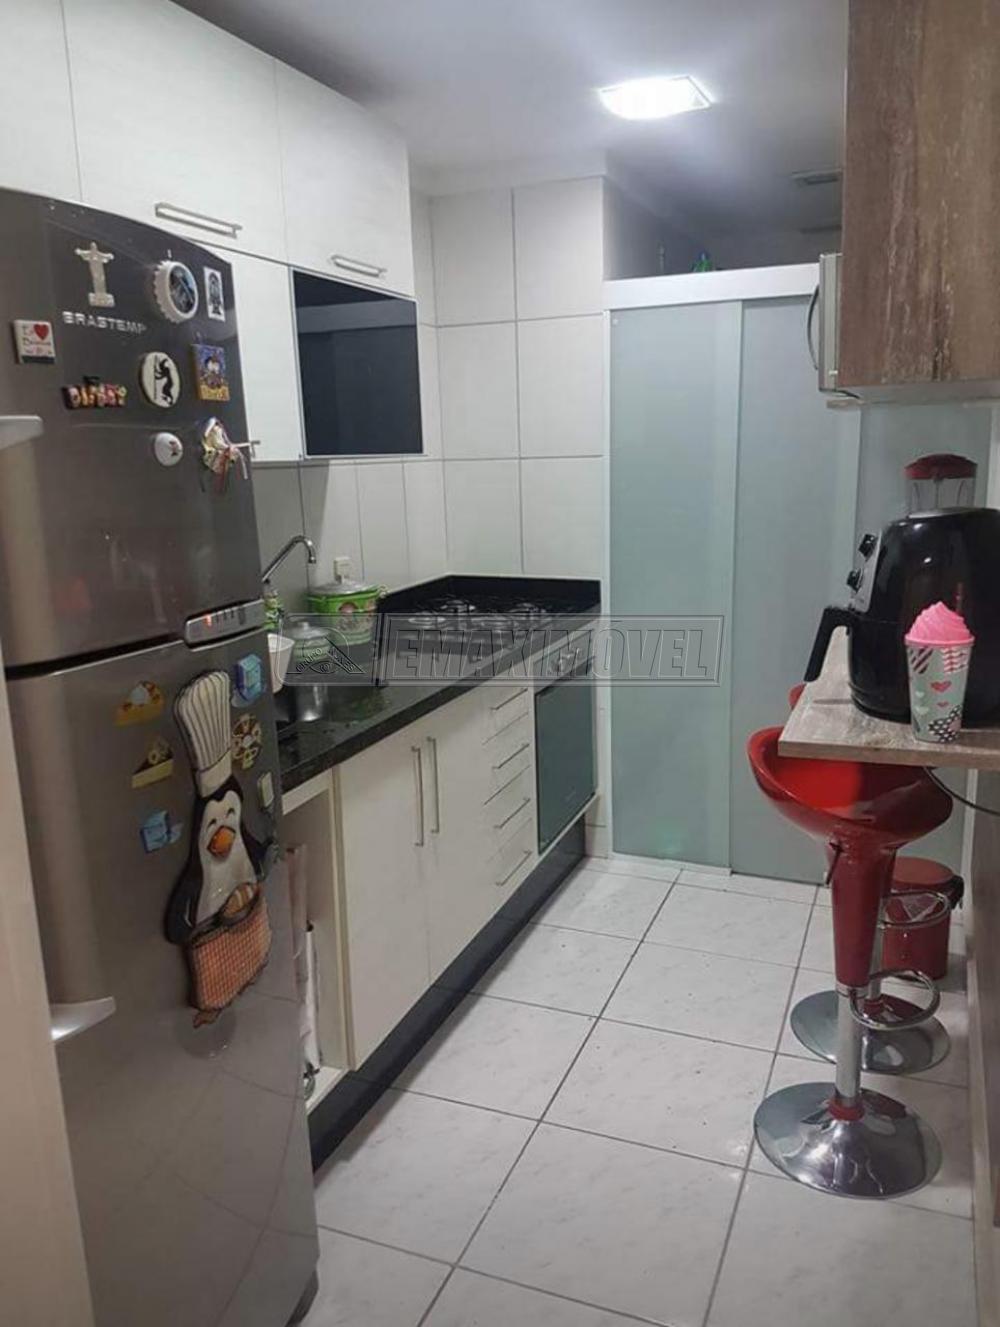 Comprar Apartamento / Padrão em Sorocaba R$ 250.000,00 - Foto 5